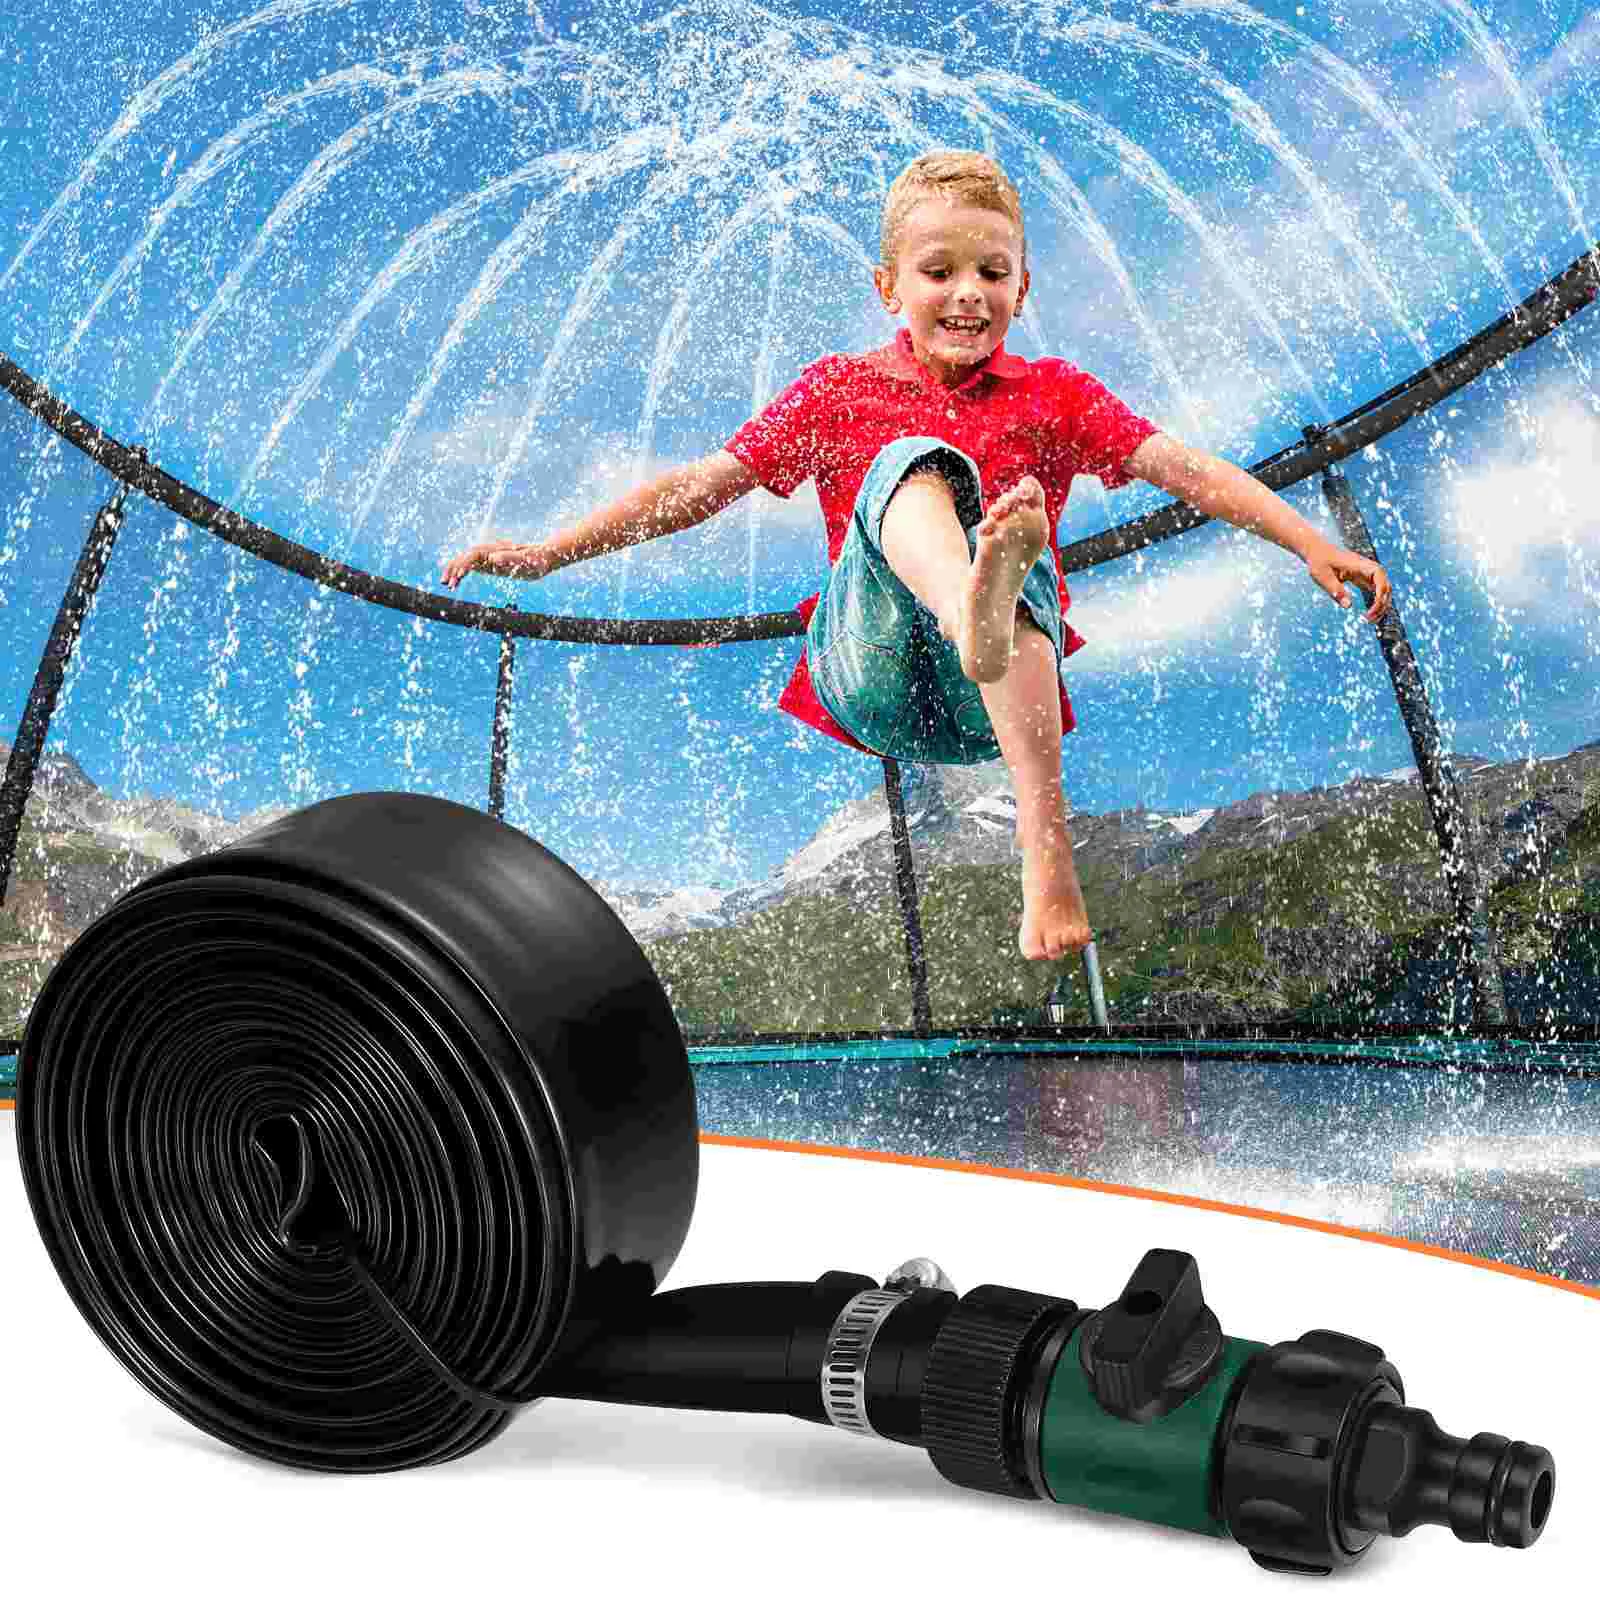 

Sprinkler Trampoline Kids Water Sprinklers Outdoor Yard Games Kid Toys Play Accessory Accessories Toy Spray Backyard Waterpark